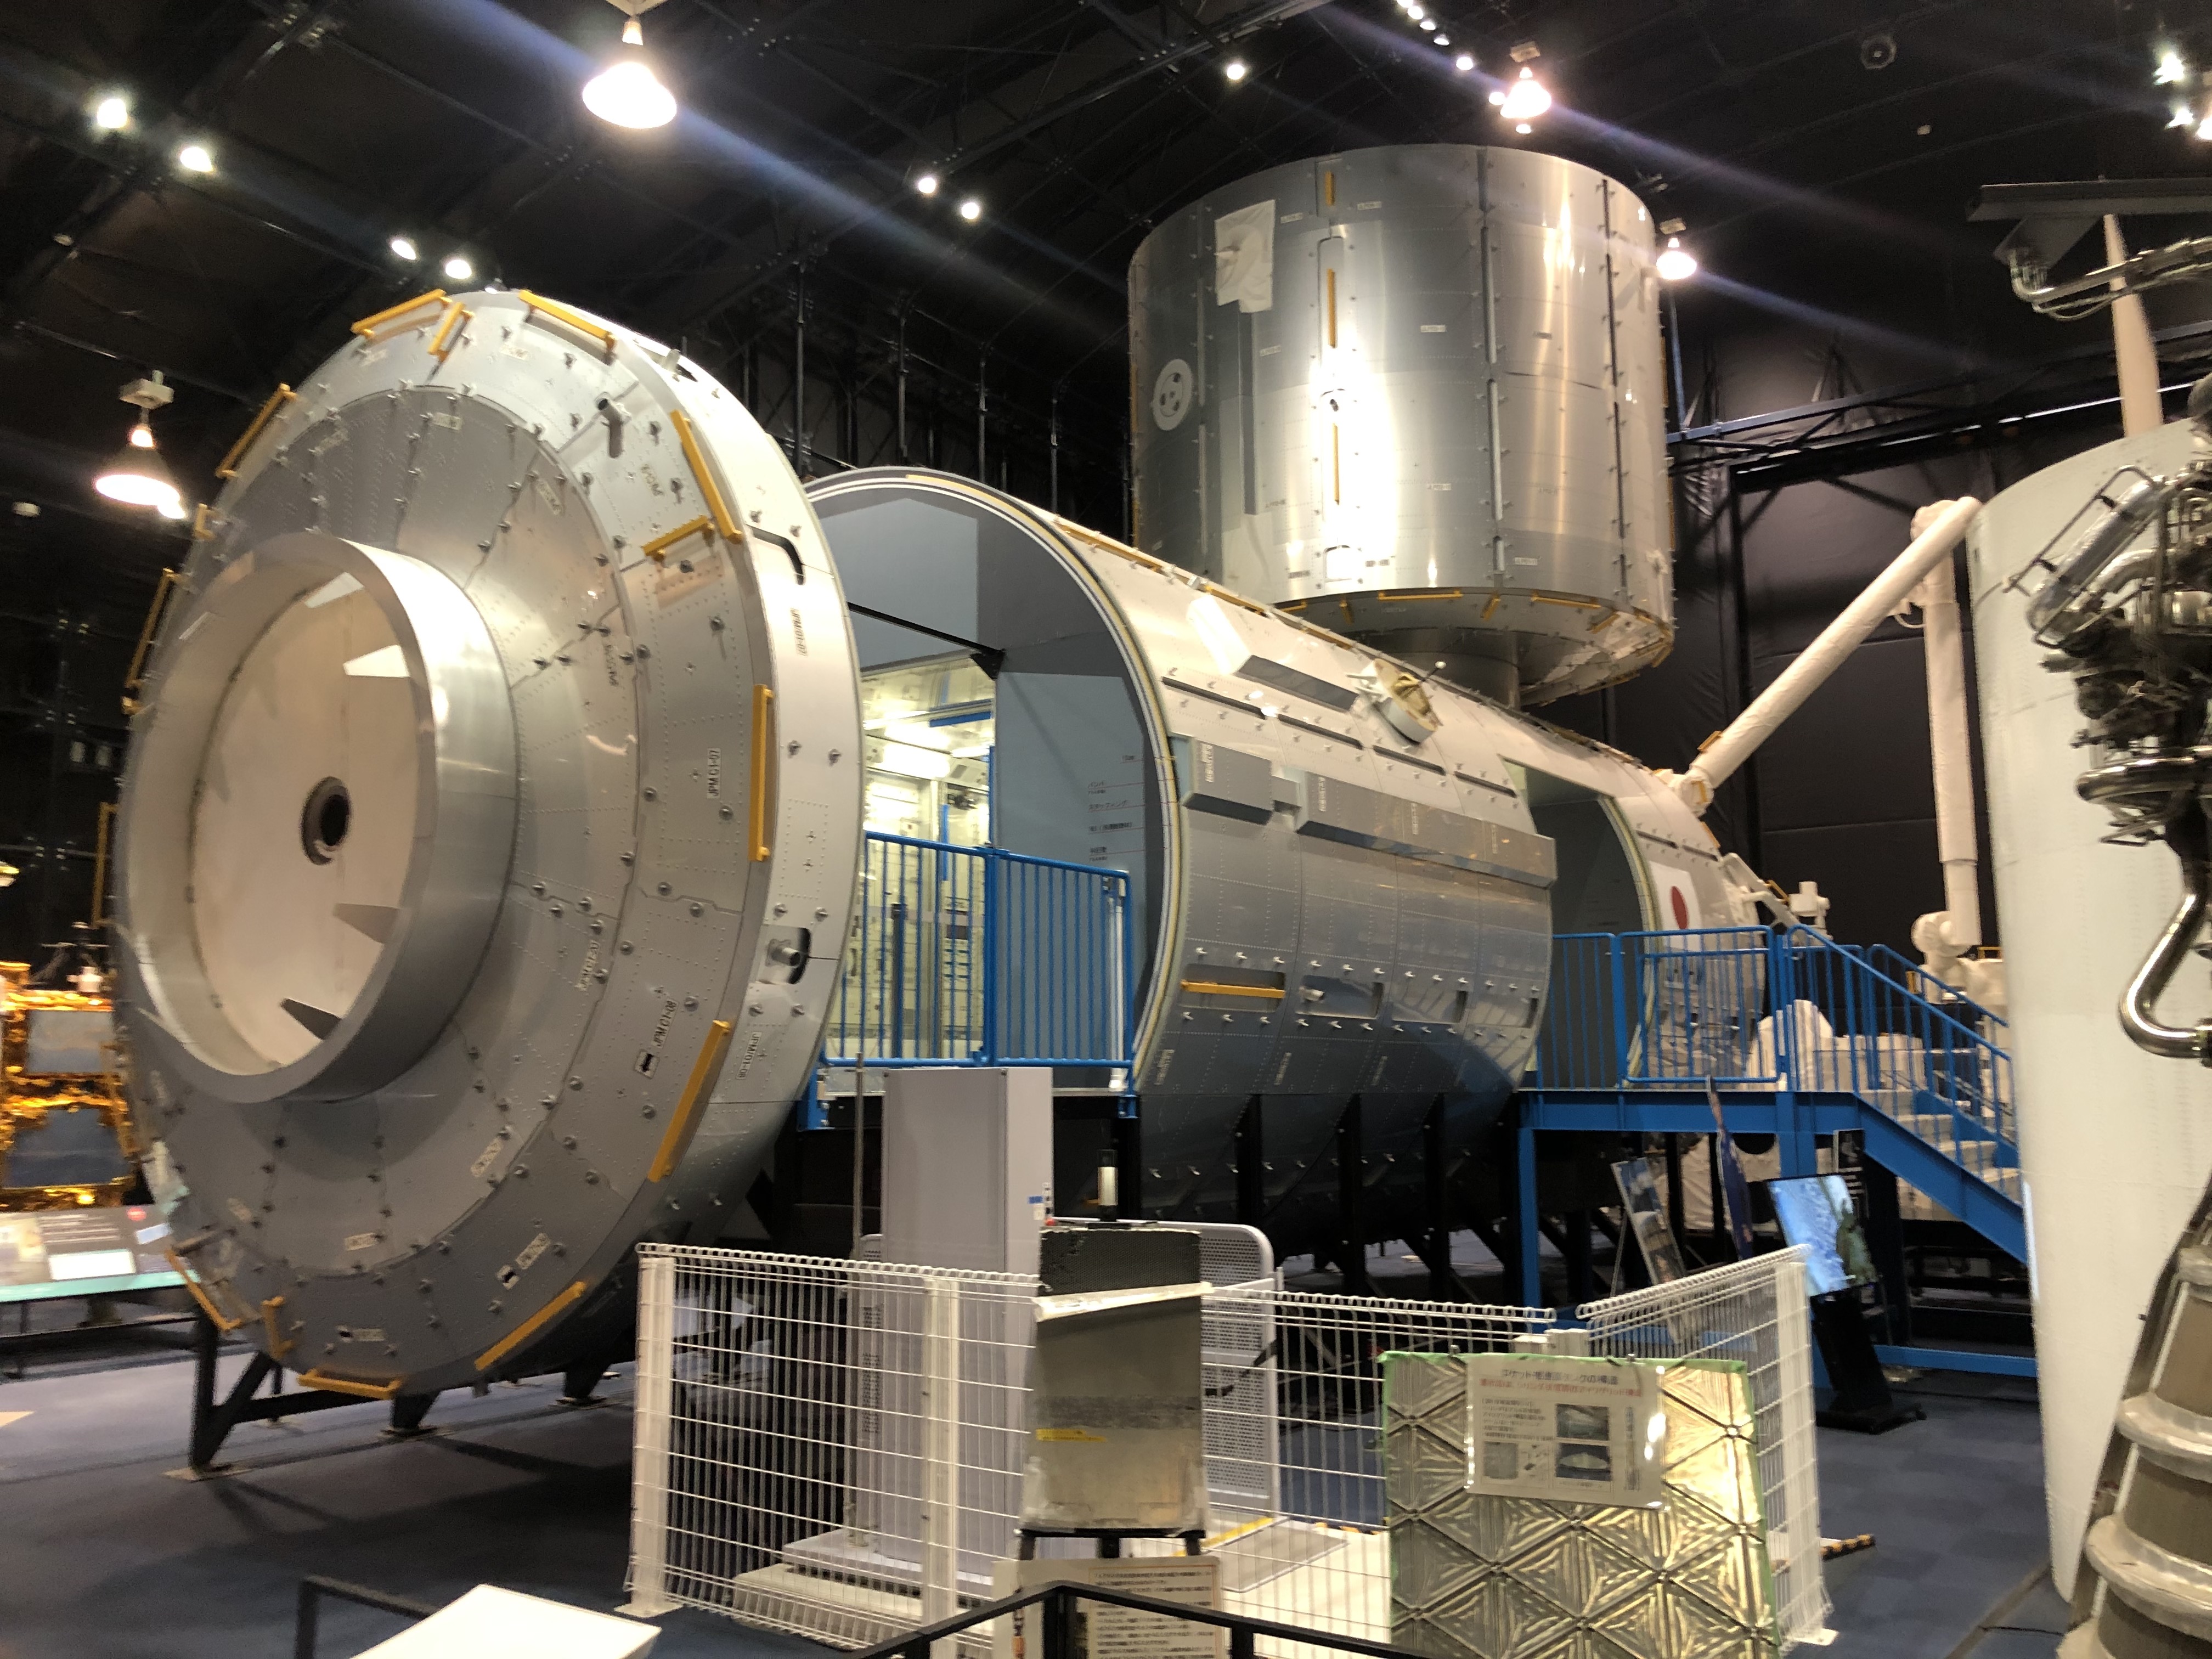 Modelo a escala del Módulo de Investigación "Kibo" de la Estación Espacial Internacional, ubicado en el Centro Espacial de JAXA en Tsukuba, Japón. En este lugar se preparará al Quetzal-1 previo a ser lanzado a su órbita en abril próximo. (Foto Prensa Libre: Daniel Guillén Flores)